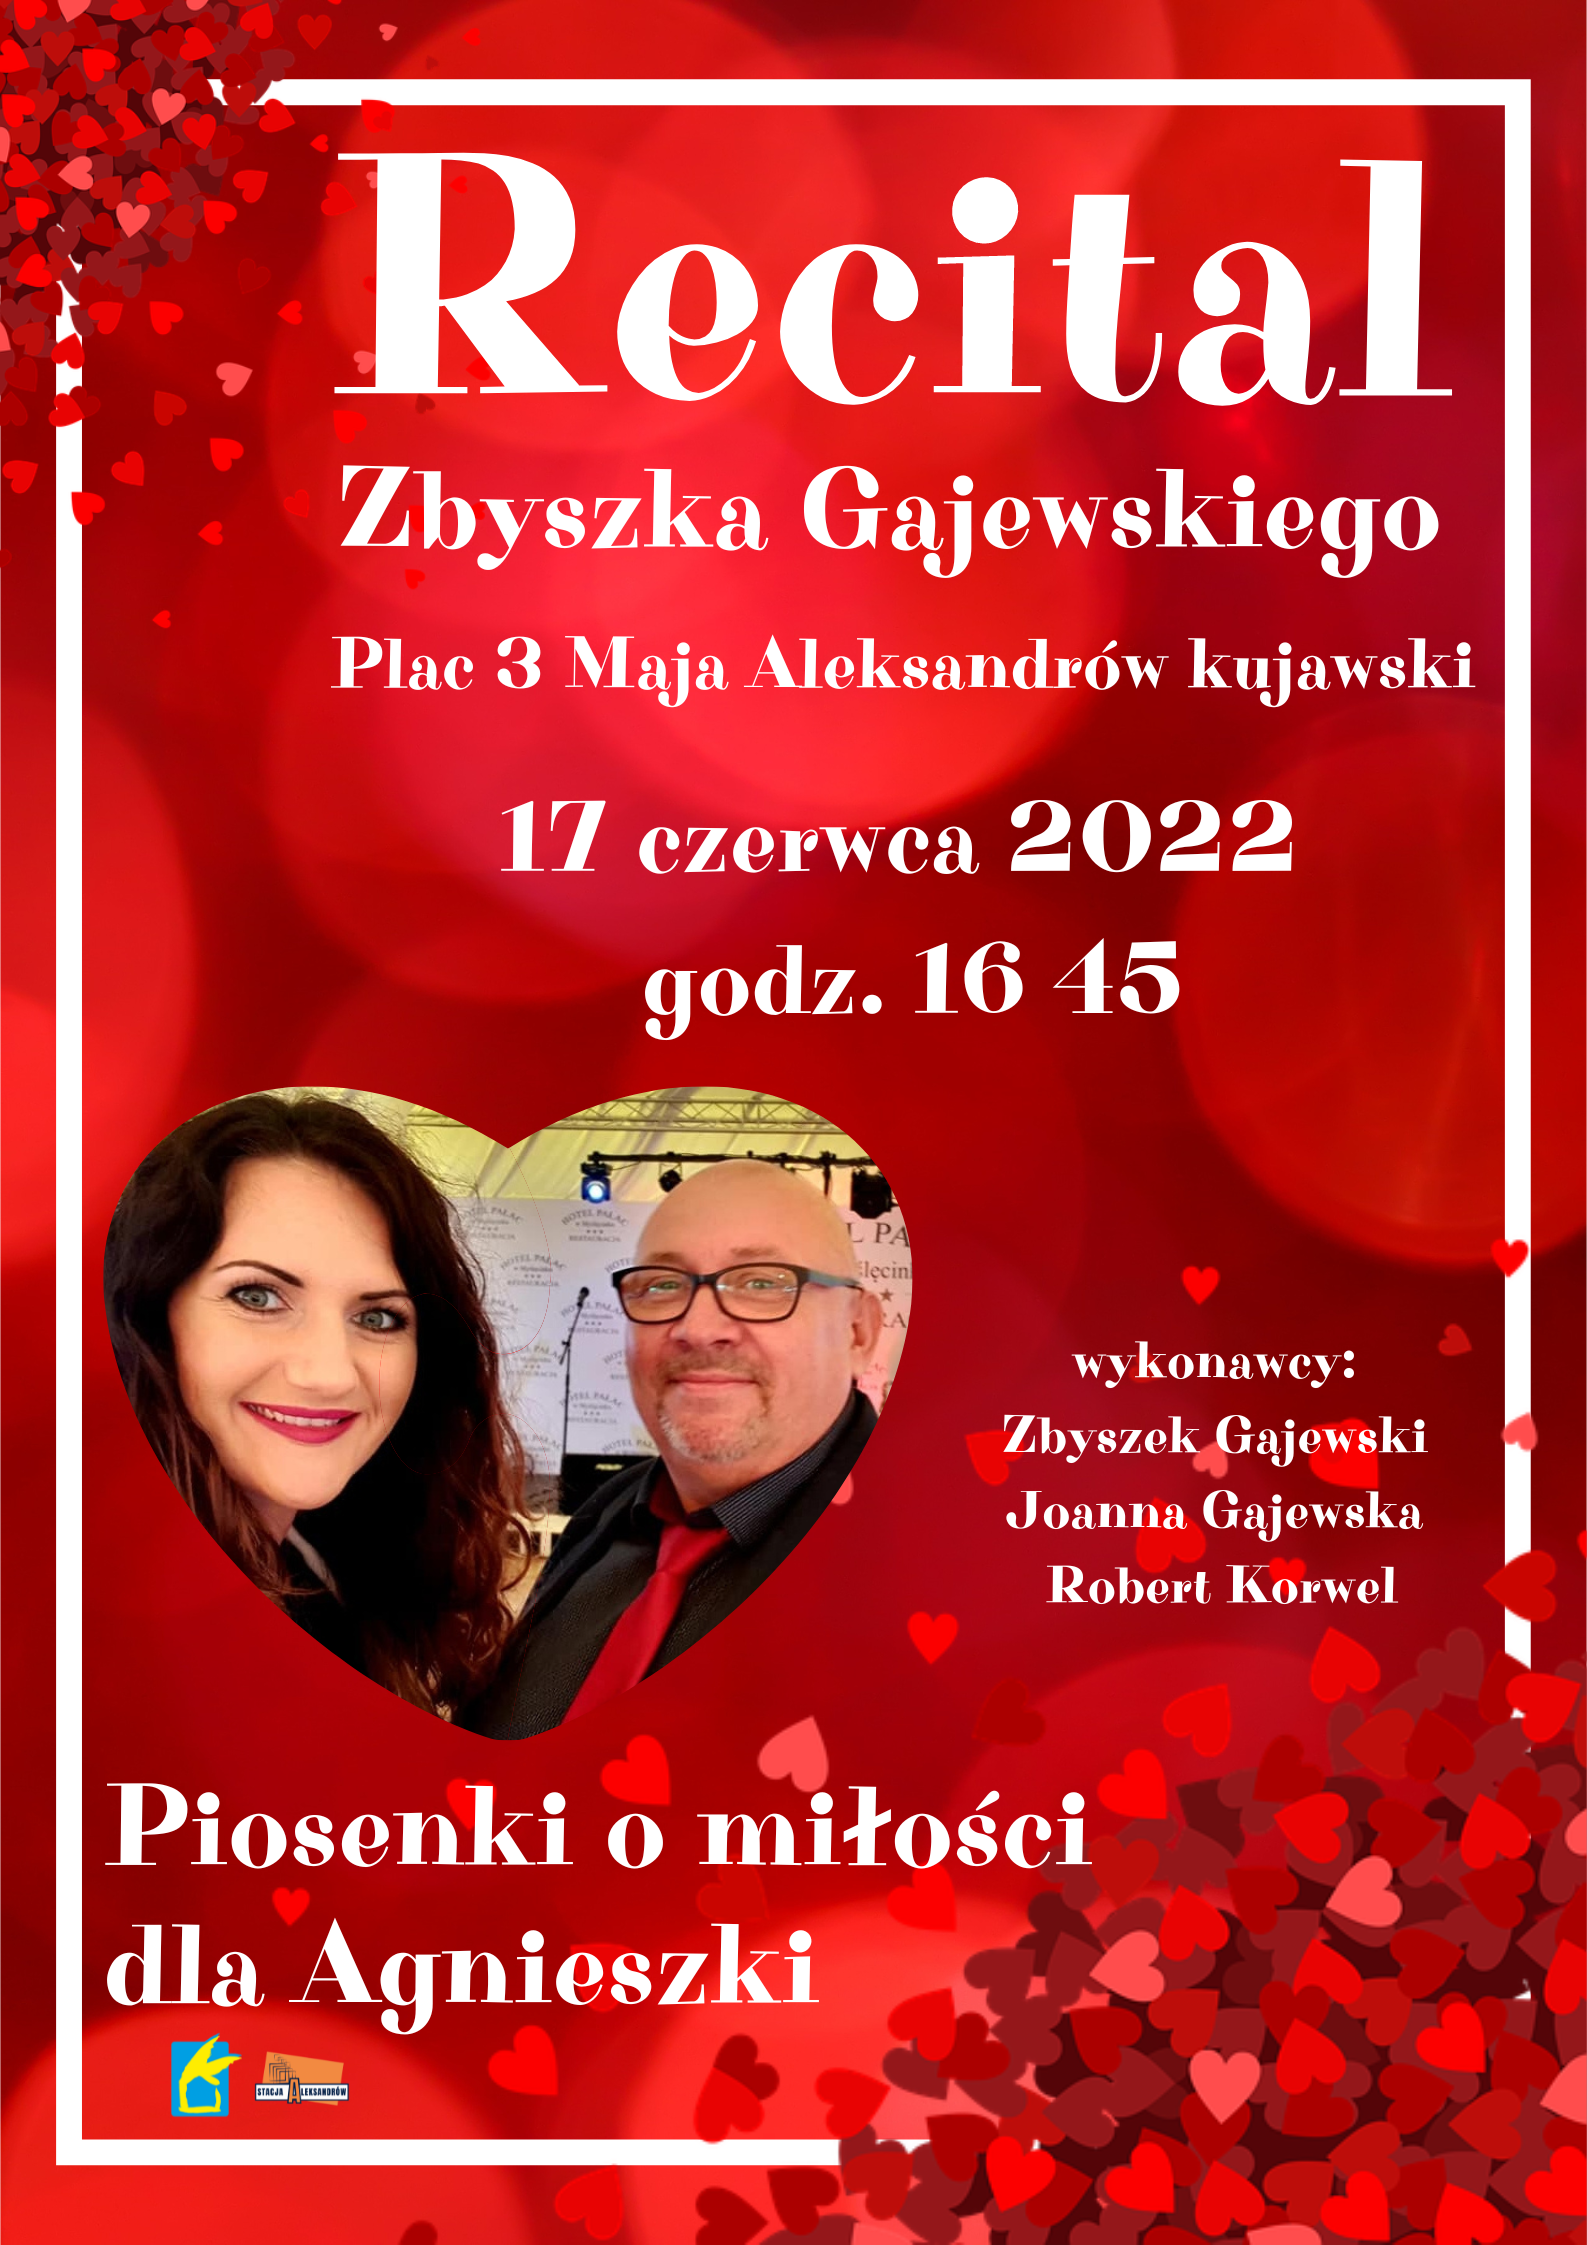 recital Zbyszka Gajewskiego plac 3 maja Aleksandrw kujawski 17 czerwca 2022 godz 16 45 wykonawcy Zbyszek Gajewski Joanna Gajewska Robert Korwel